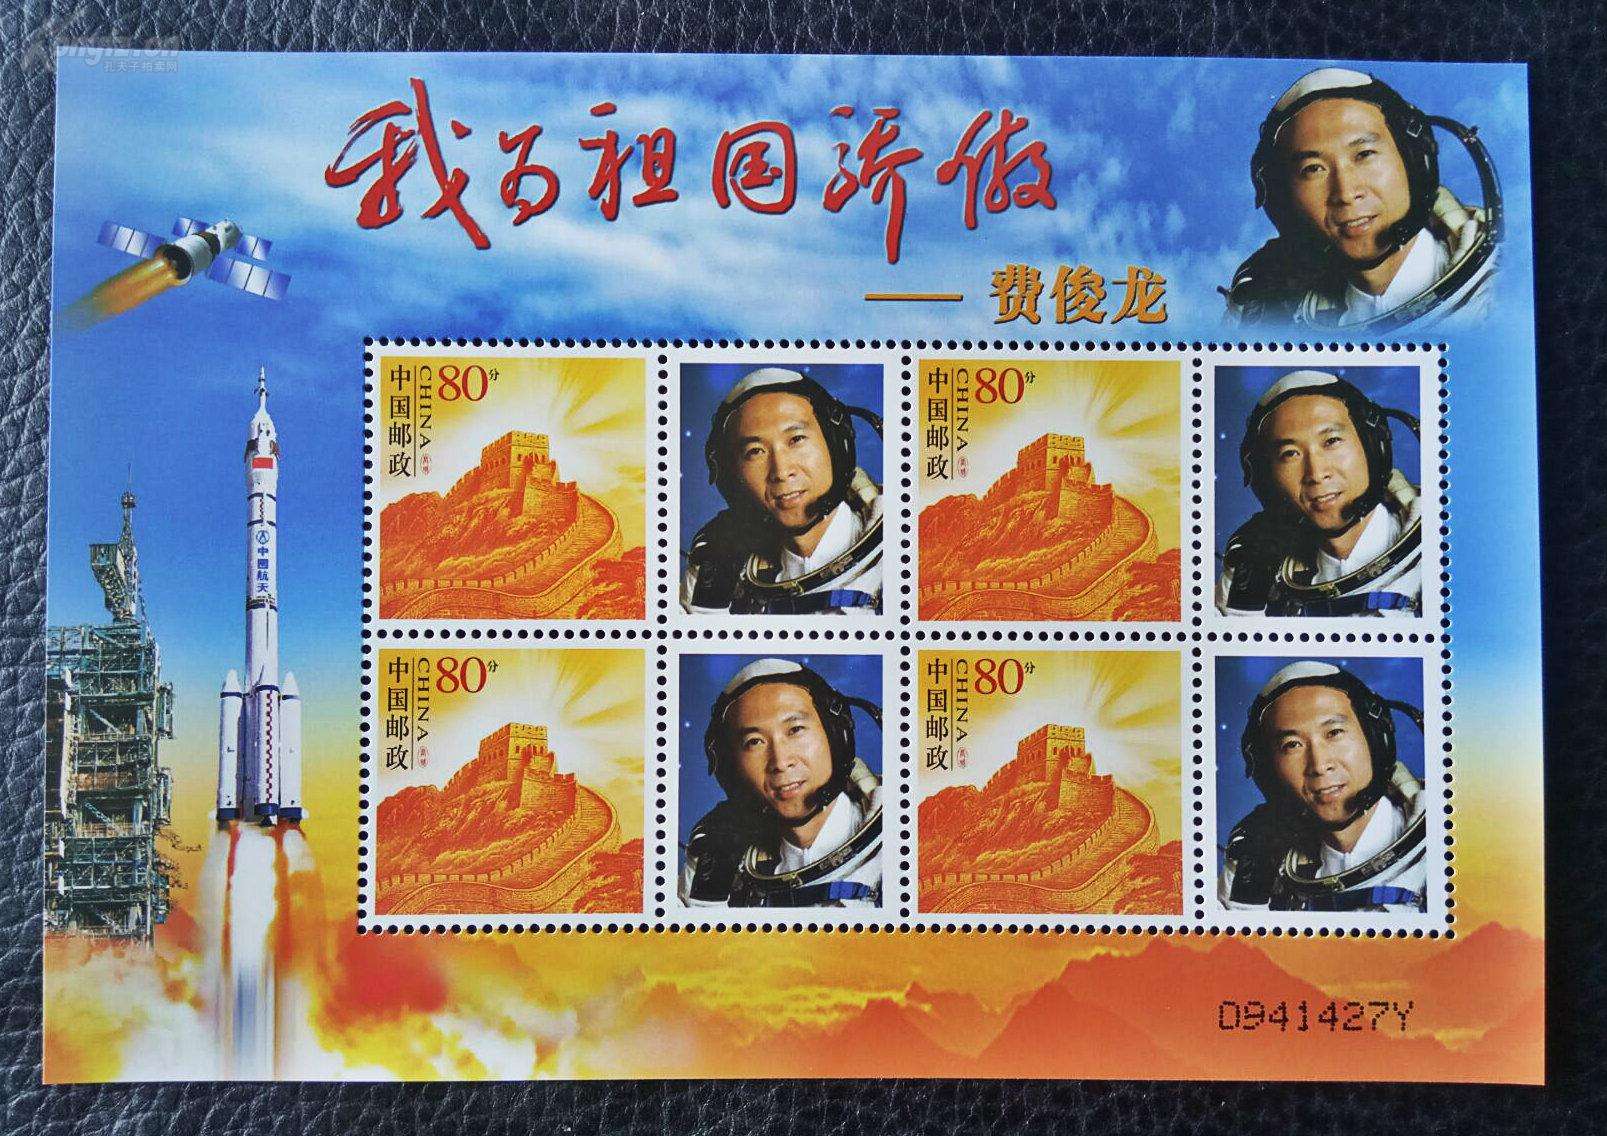  航天员费俊龙个性化邮票